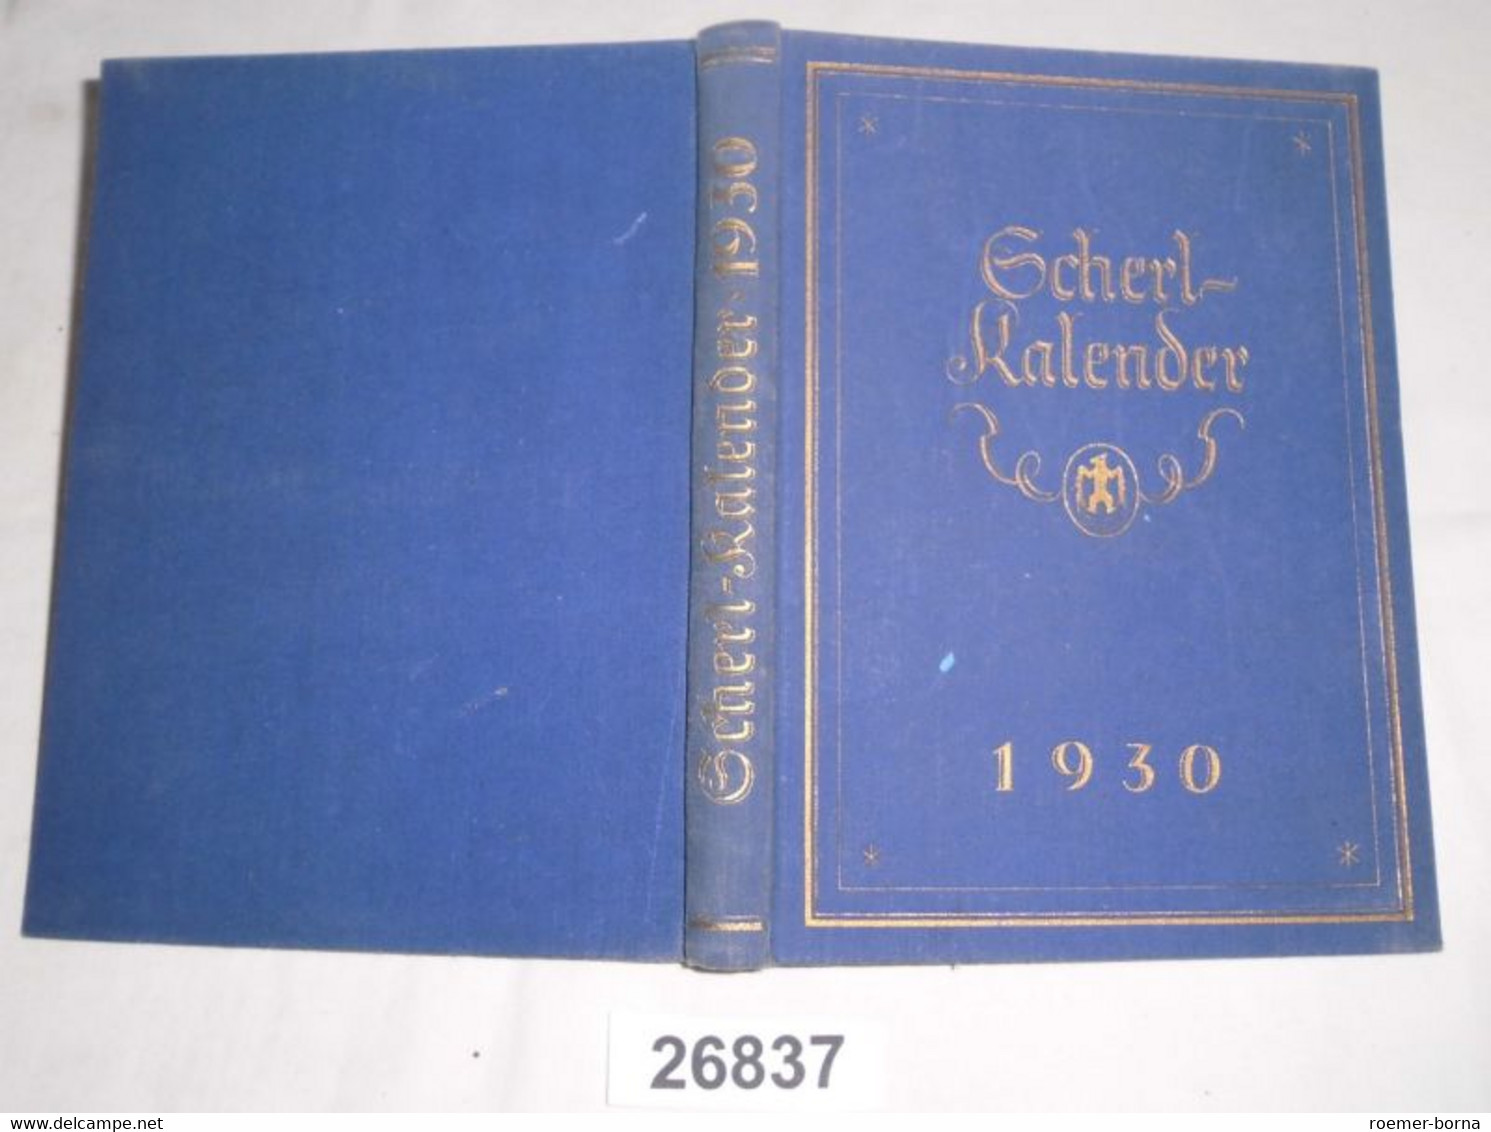 Scherl-Kalender 1930 - Calendars